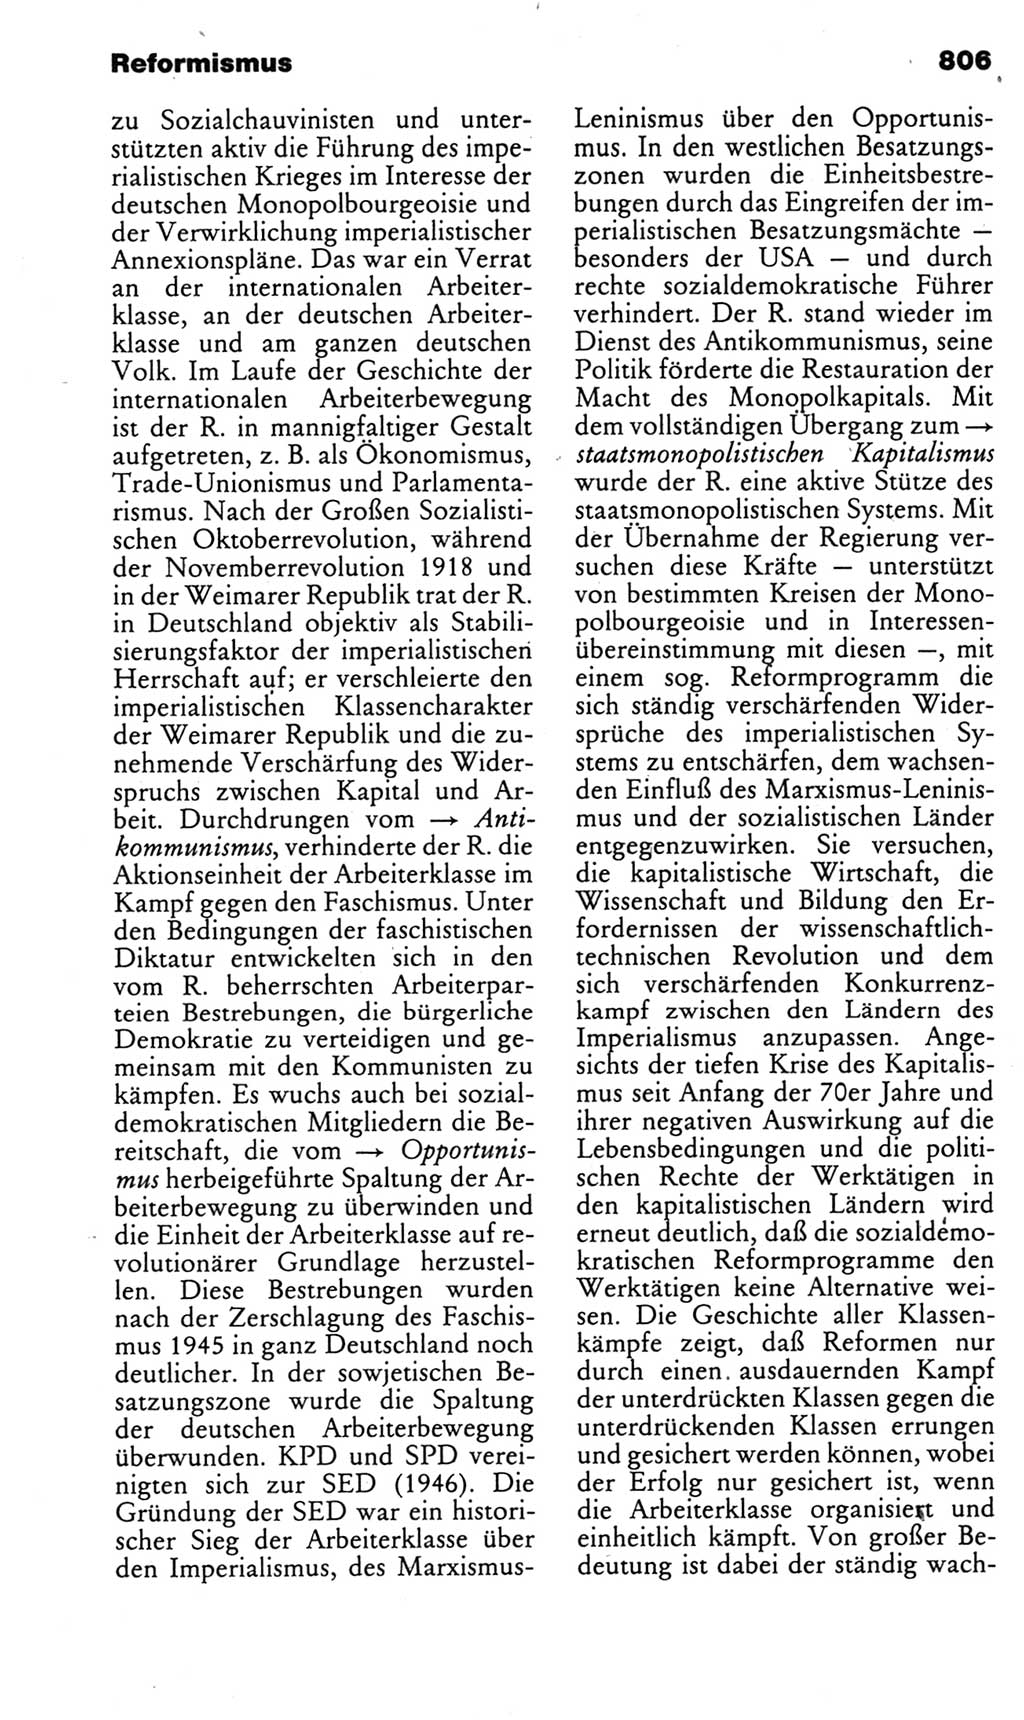 Kleines politisches Wörterbuch [Deutsche Demokratische Republik (DDR)] 1985, Seite 806 (Kl. pol. Wb. DDR 1985, S. 806)